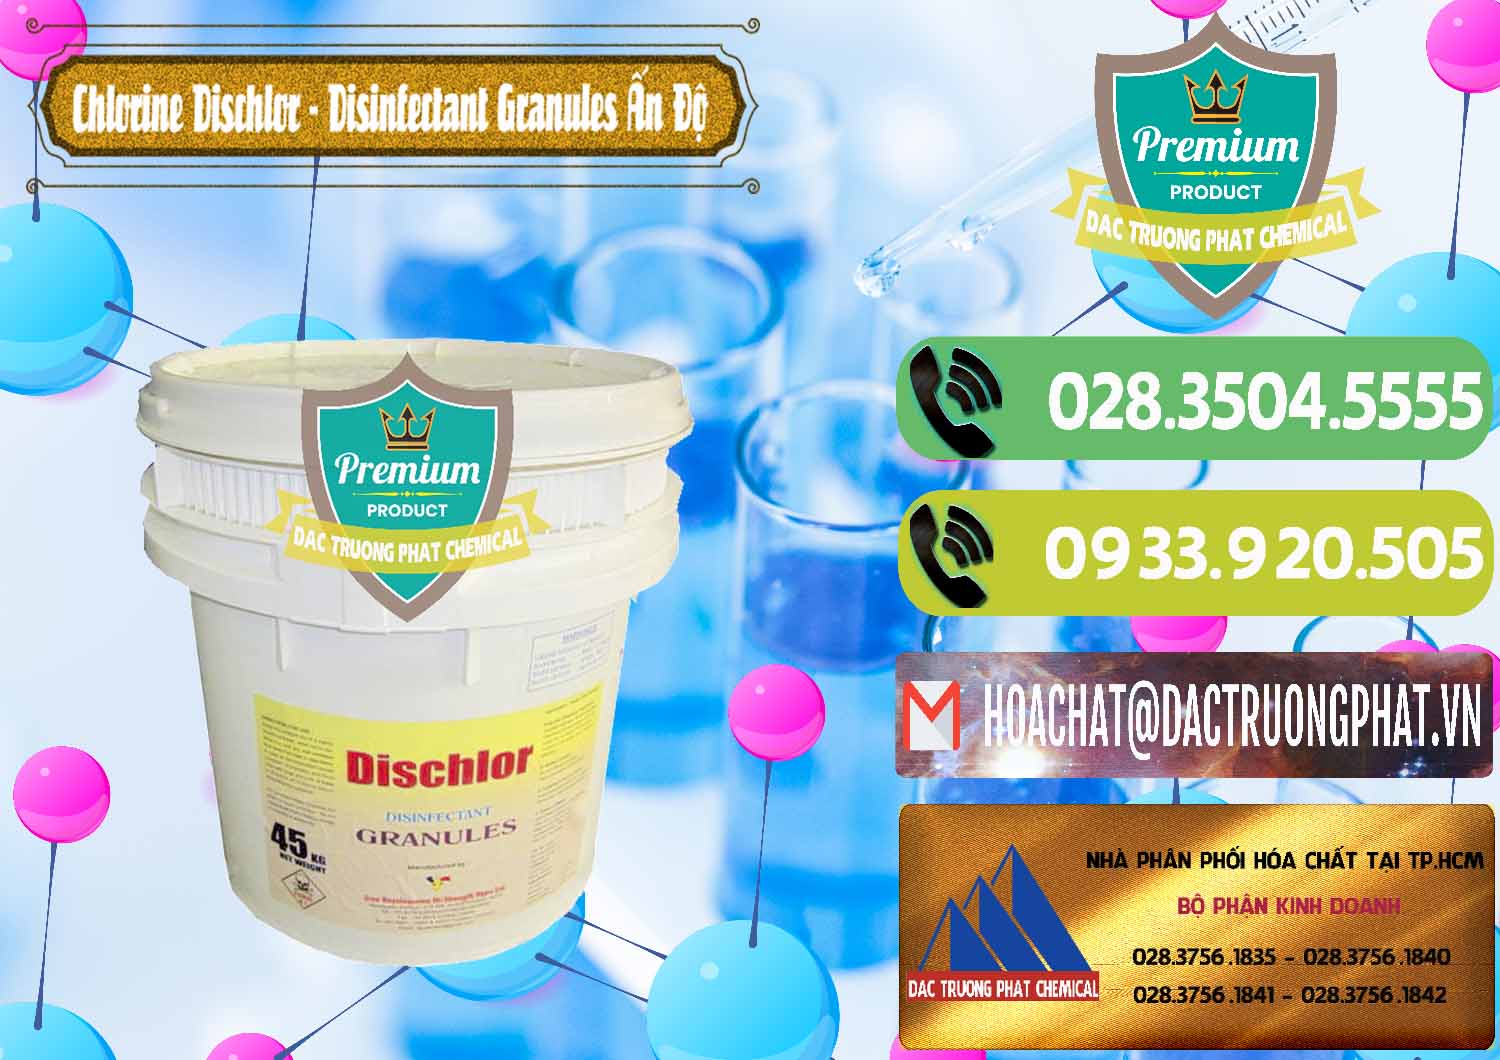 Cty chuyên bán ( cung ứng ) Chlorine – Clorin 70% Dischlor - Disinfectant Granules Ấn Độ India - 0248 - Chuyên phân phối _ cung cấp hóa chất tại TP.HCM - hoachatmientay.vn